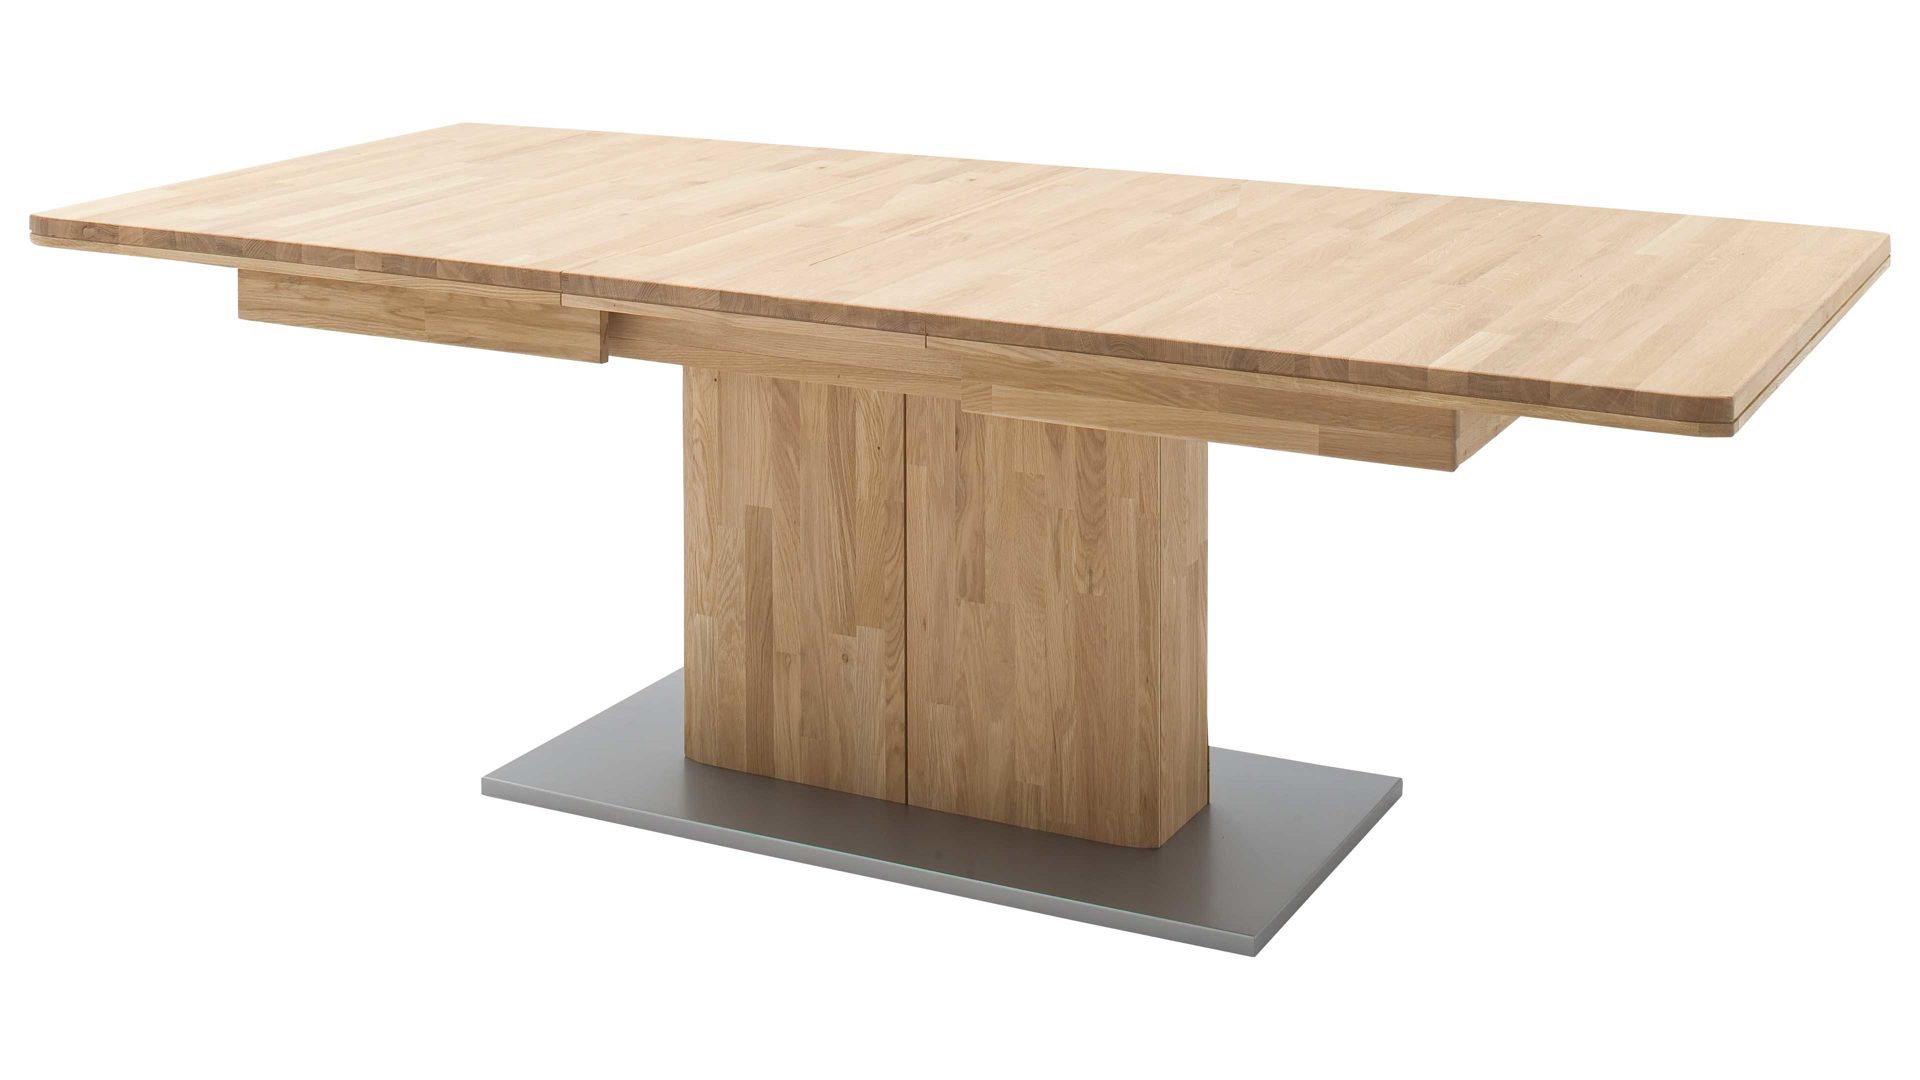 Auszugtisch Mca furniture aus Holz in Holzfarben Auszugtisch Ravello biancofarbene Balkeneiche – ca. 180-230 x 90 cm